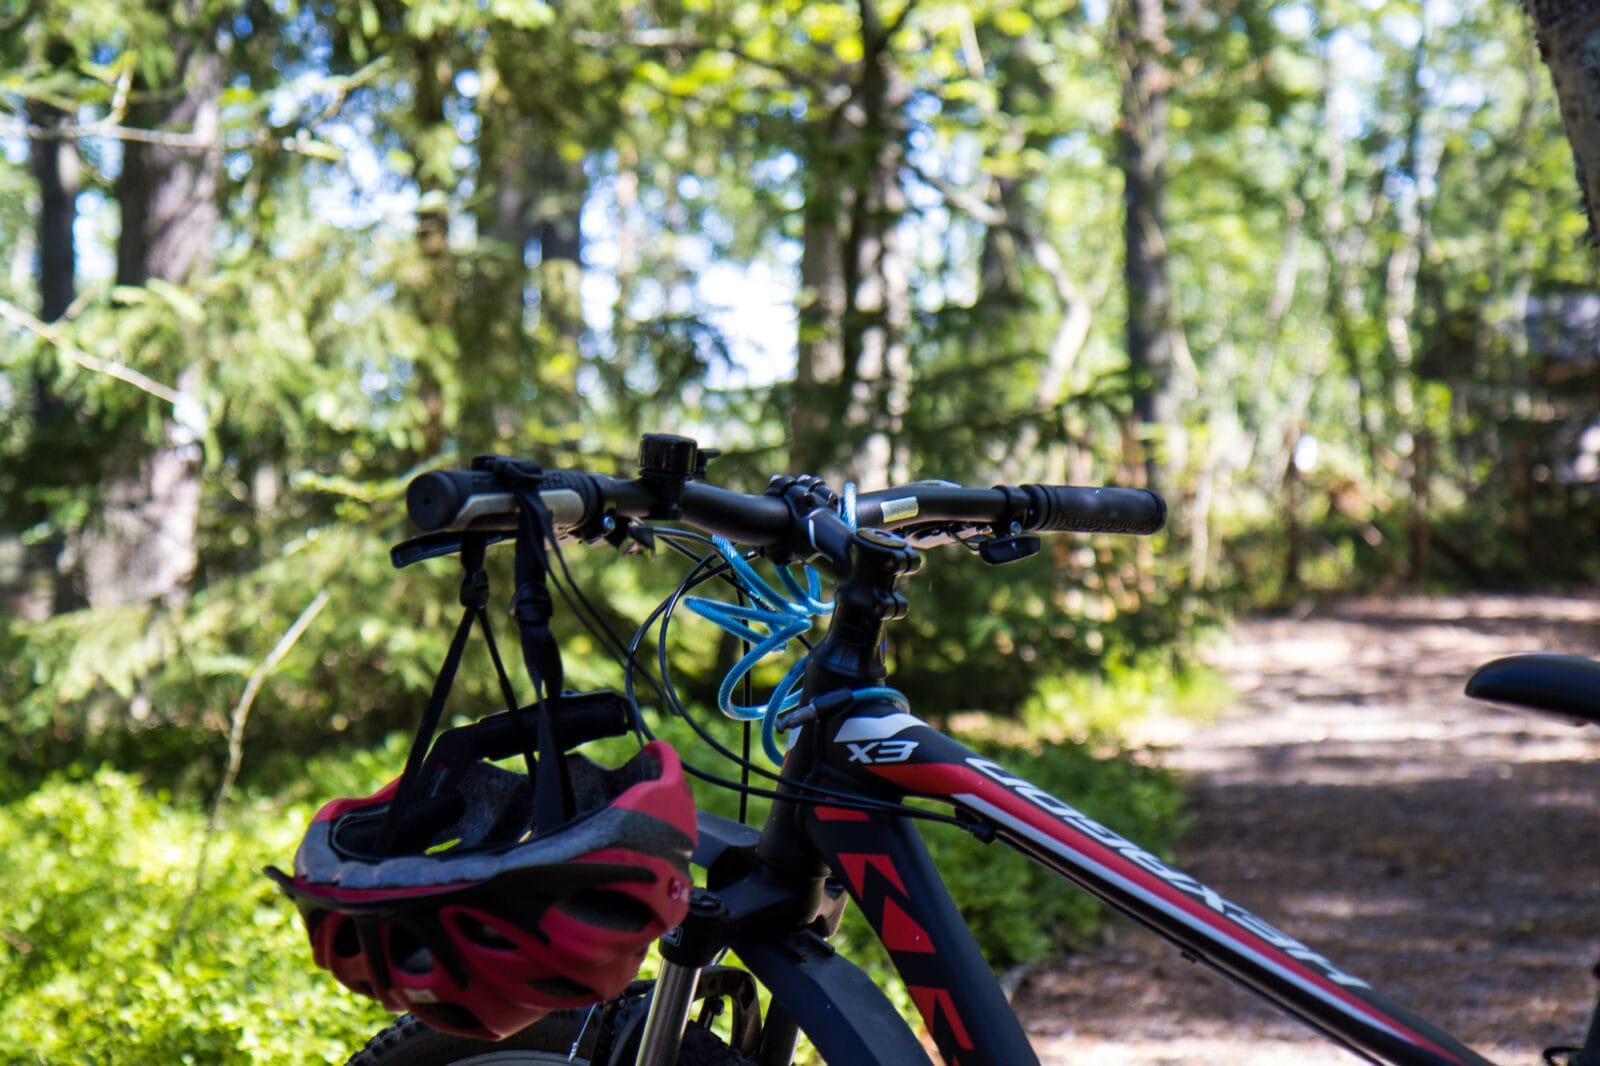 Polkupyörä pysäköitynä metsäreitille, pyörän ohjaustangosta roikkuu kypärä. Taustalla vihreää keväistä metsää.